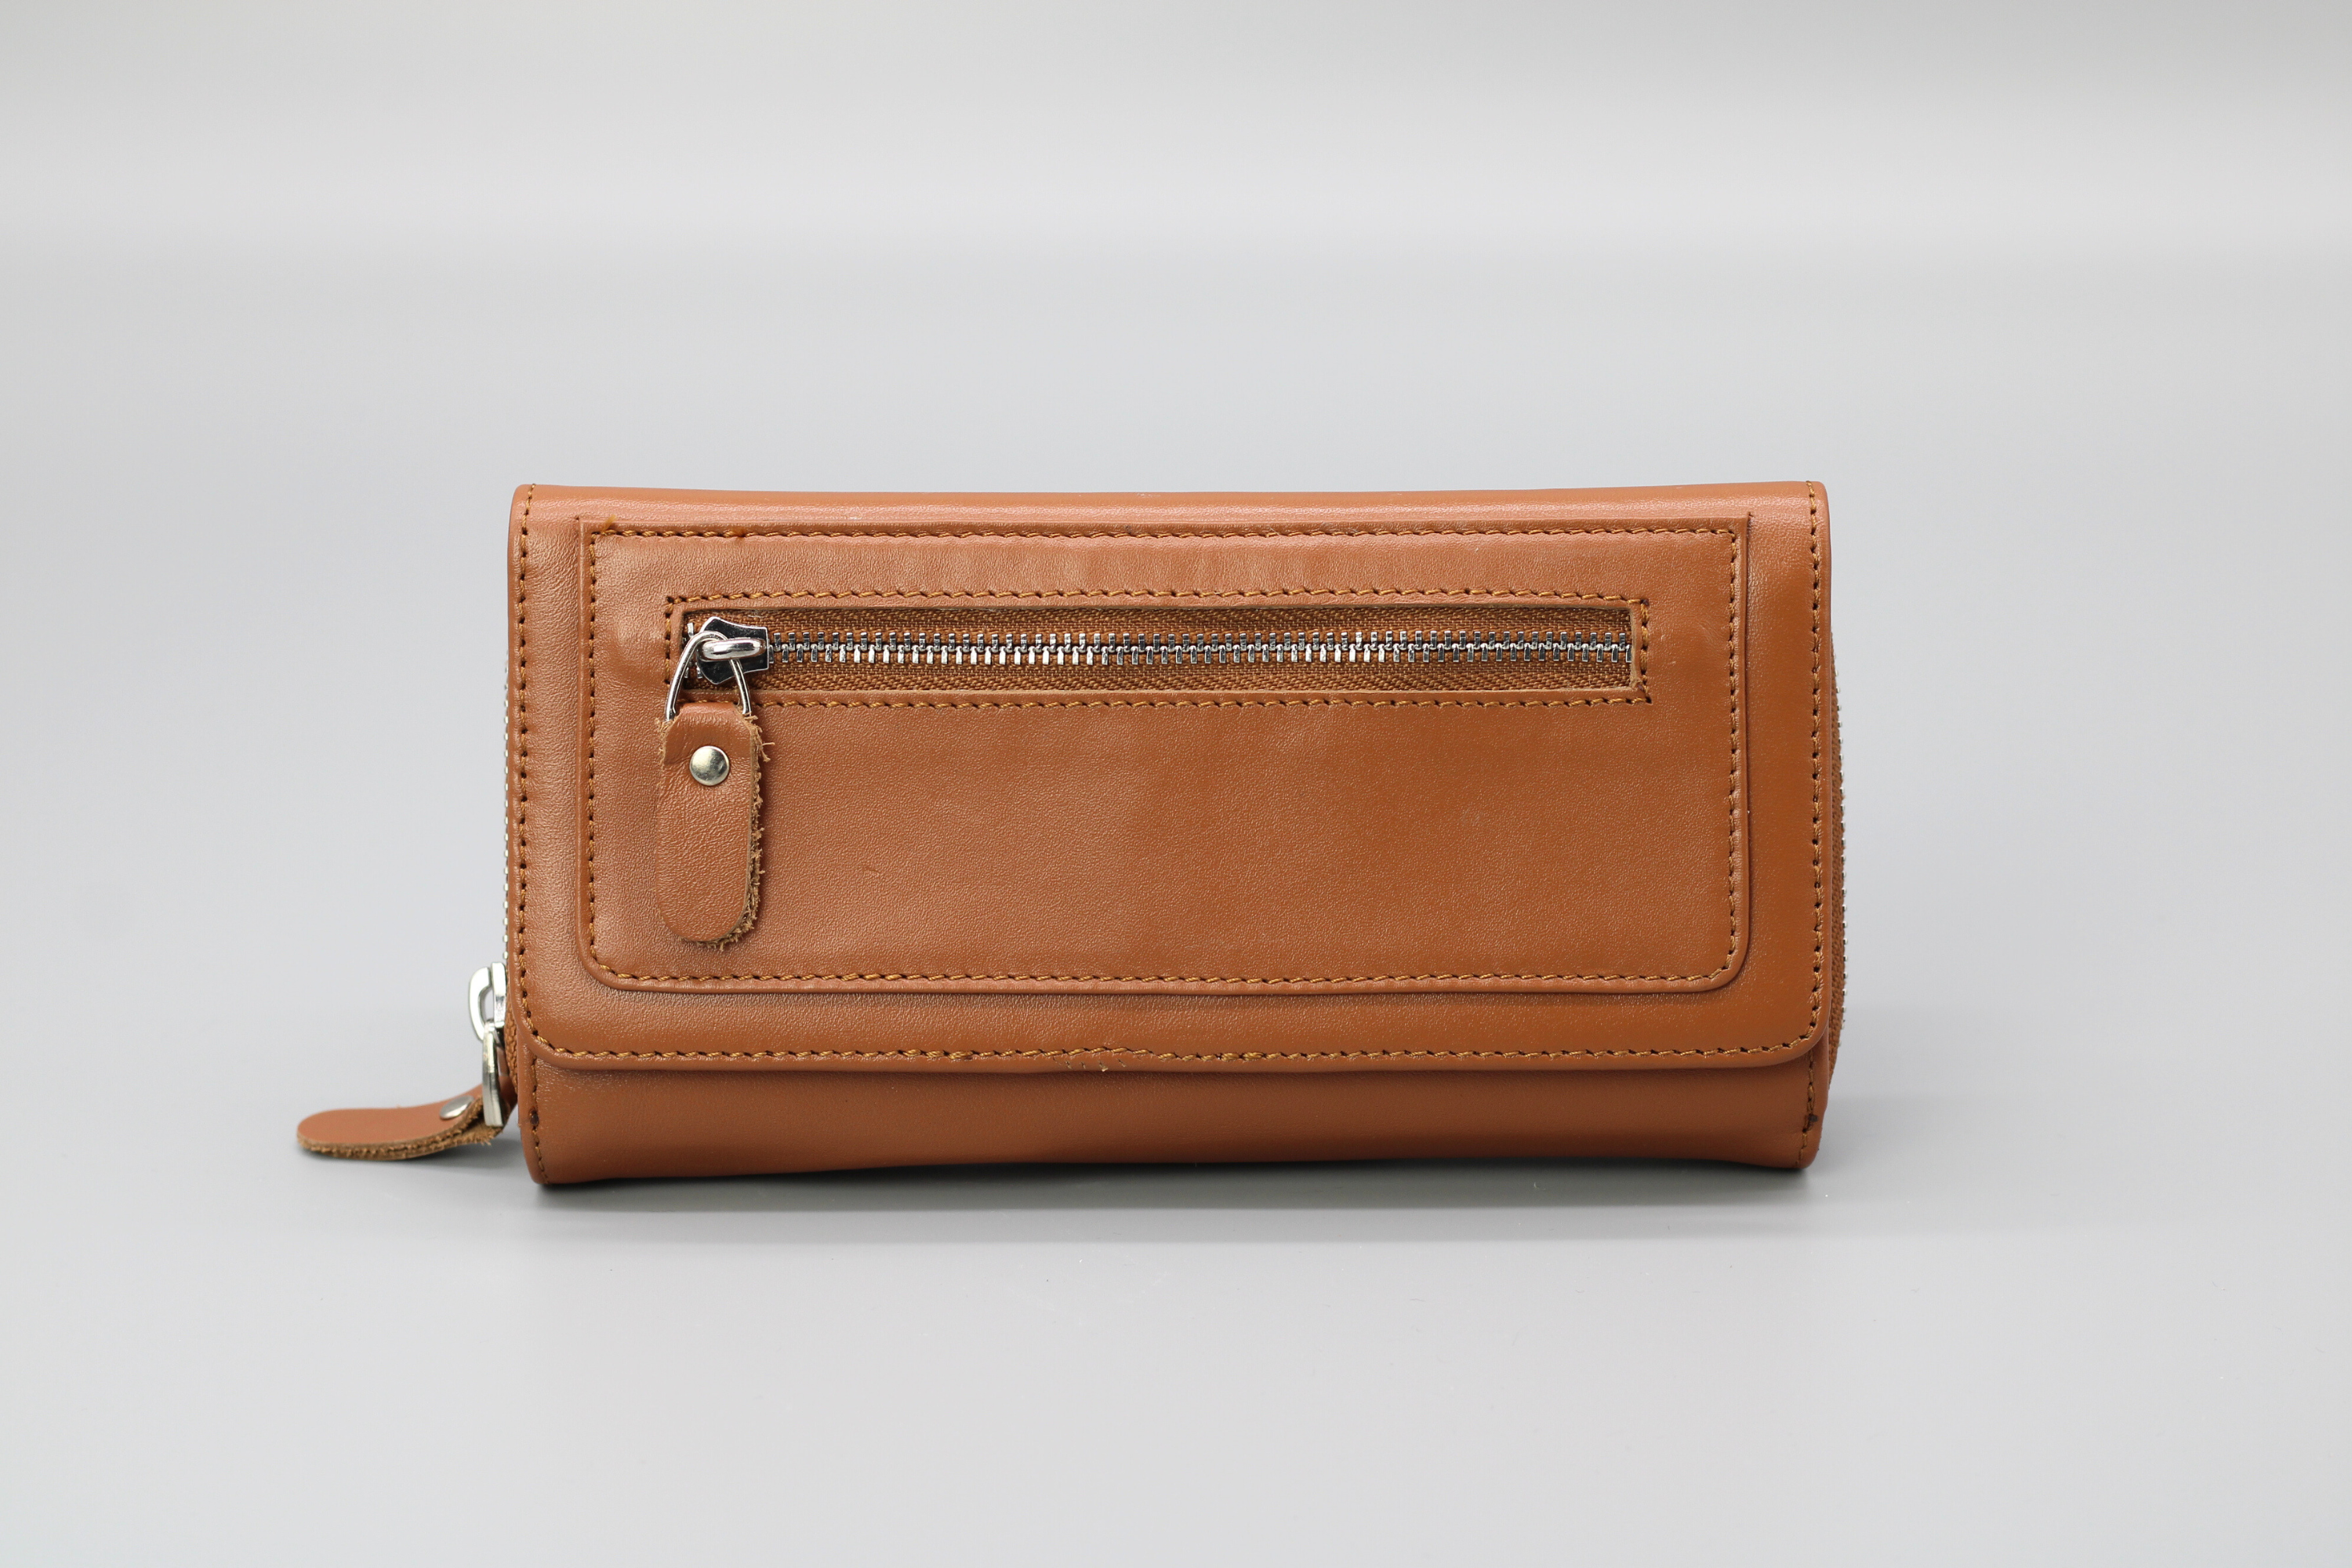 Ein tolles Portemonnaie aus weichem Leder und Kreditkartenfächern mit Reißverschluss